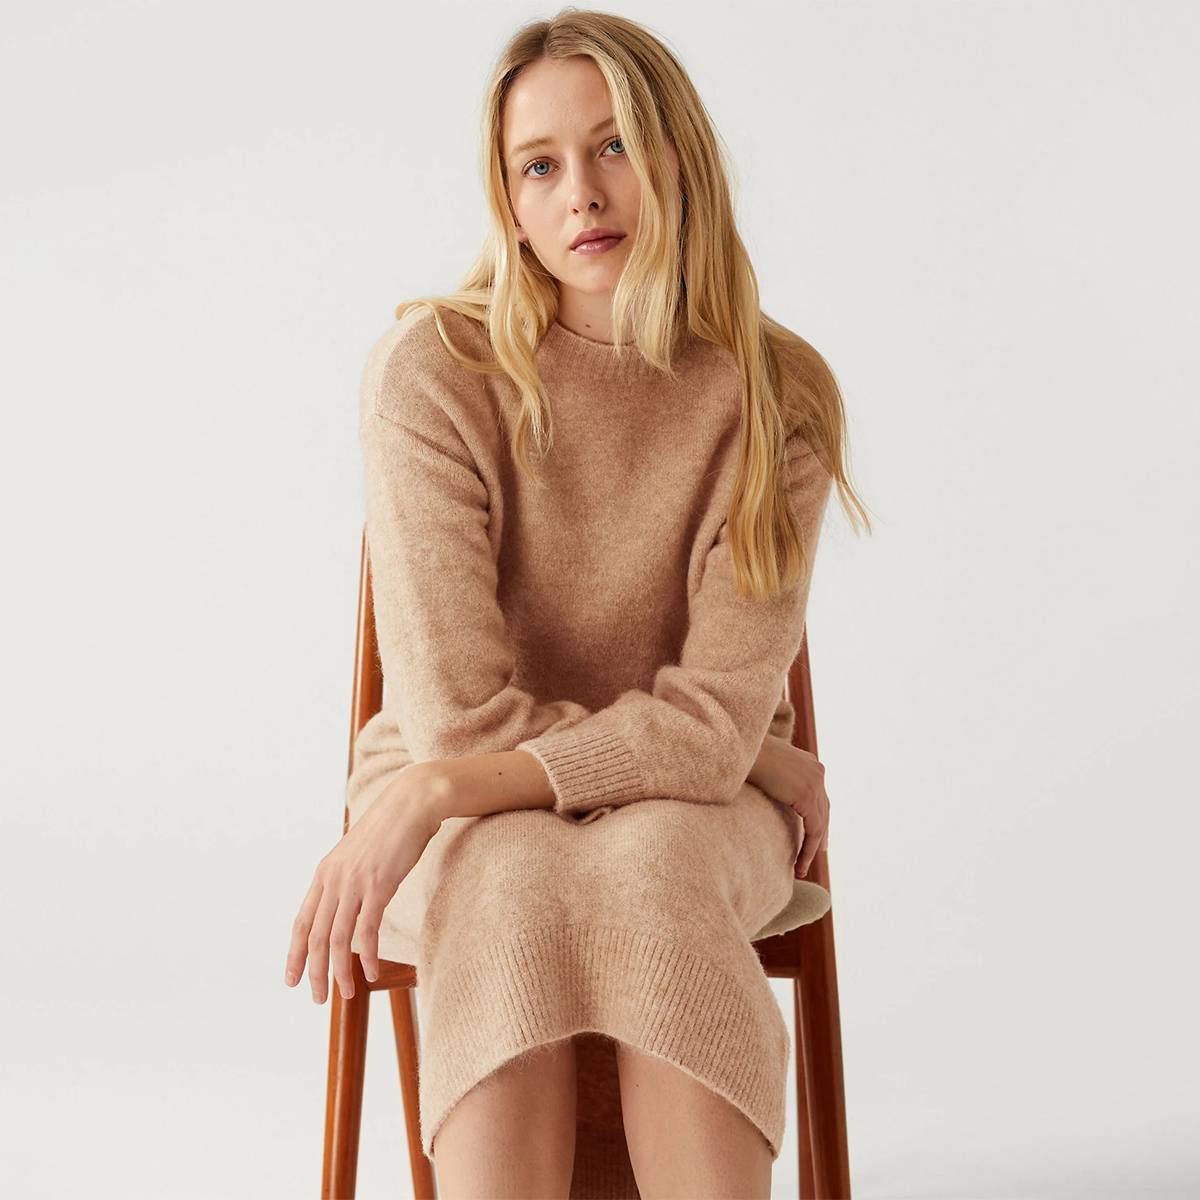  Model wearing tan knitted dress